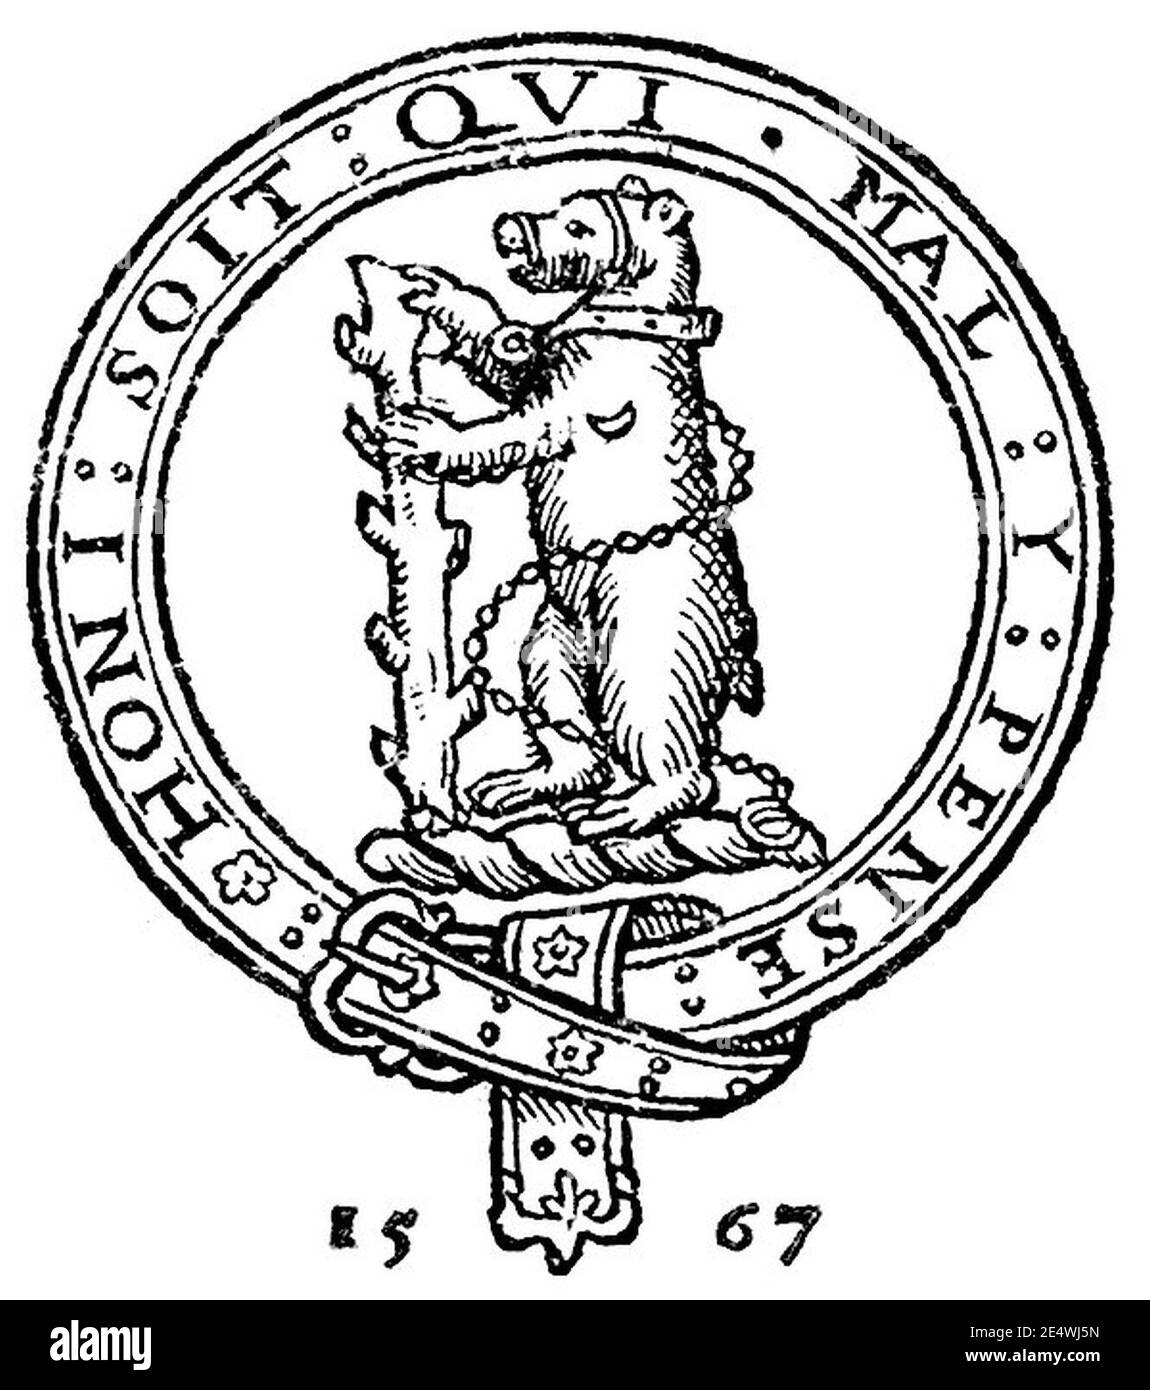 Métamorphoses (Ovid, 1567) - illustration de la page de titre. Banque D'Images